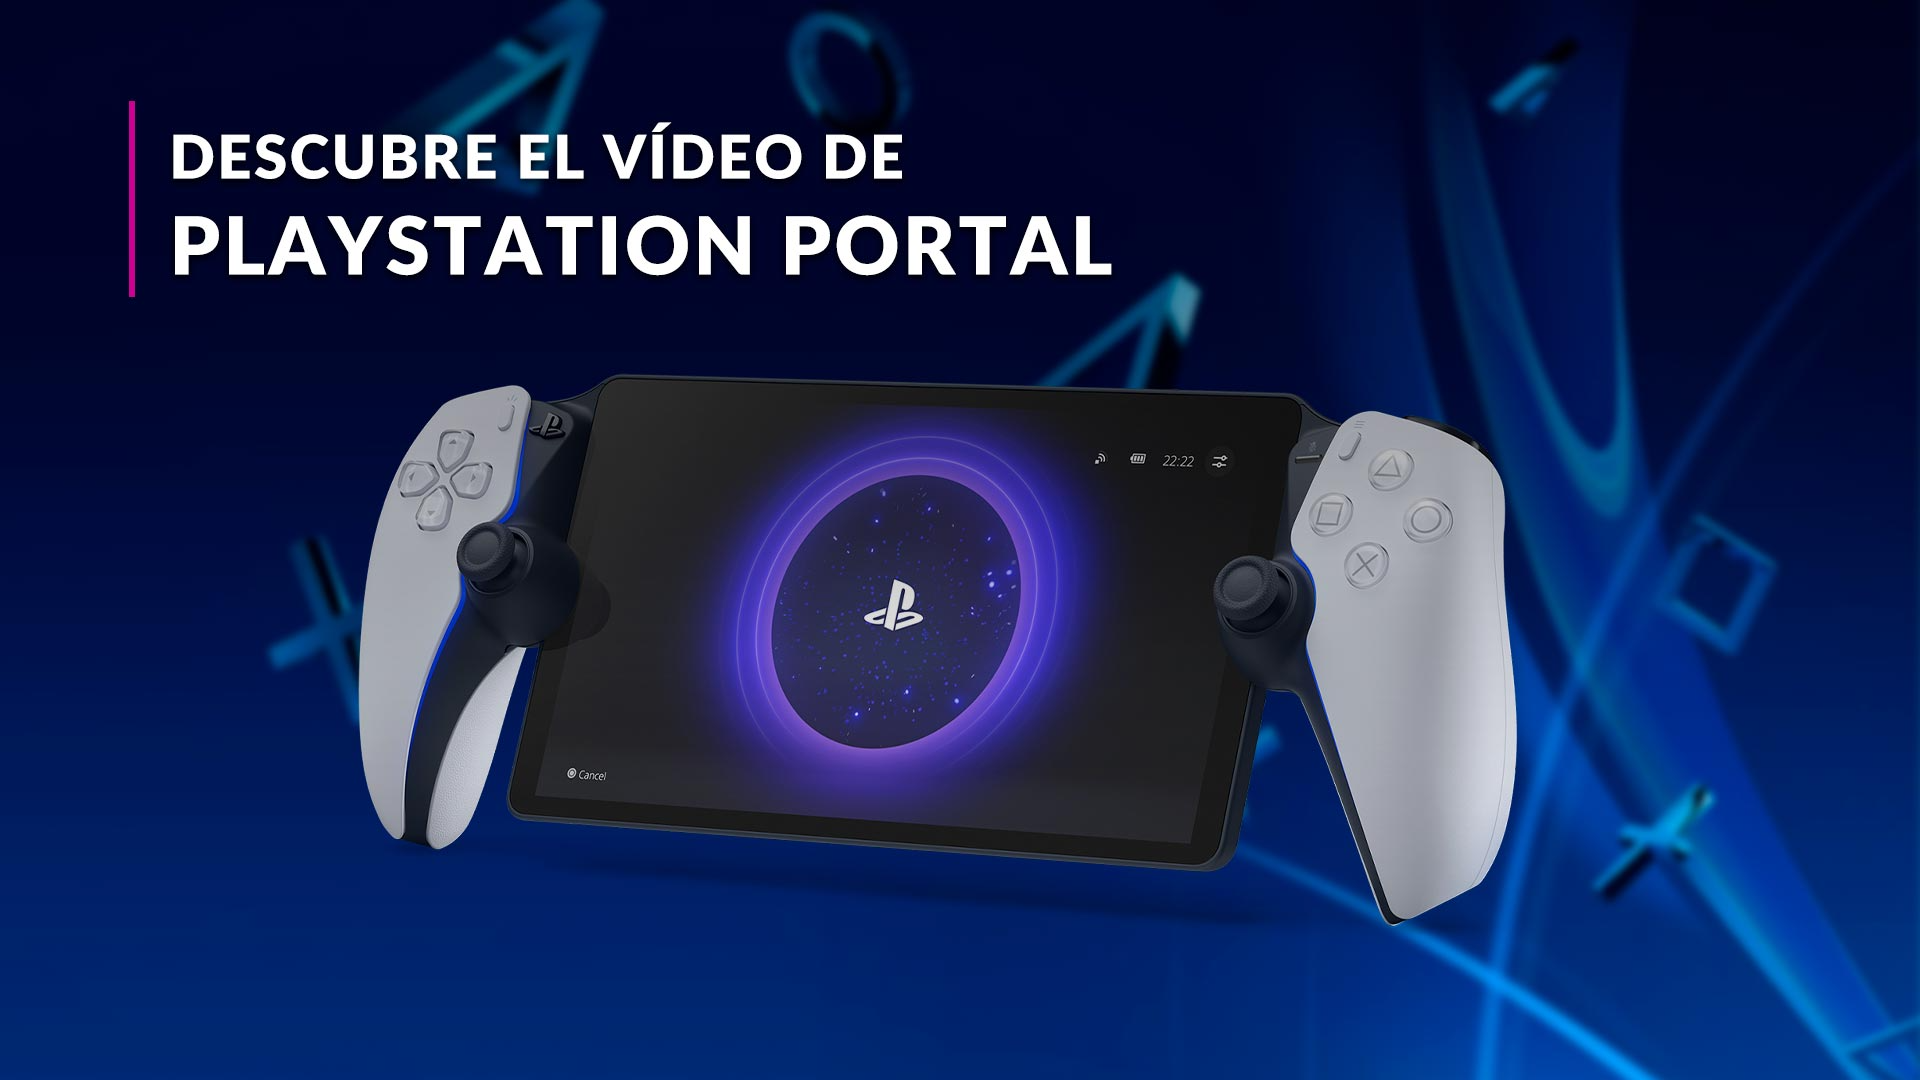 PlayStation Portal también se agota en España, confirmando su éxito